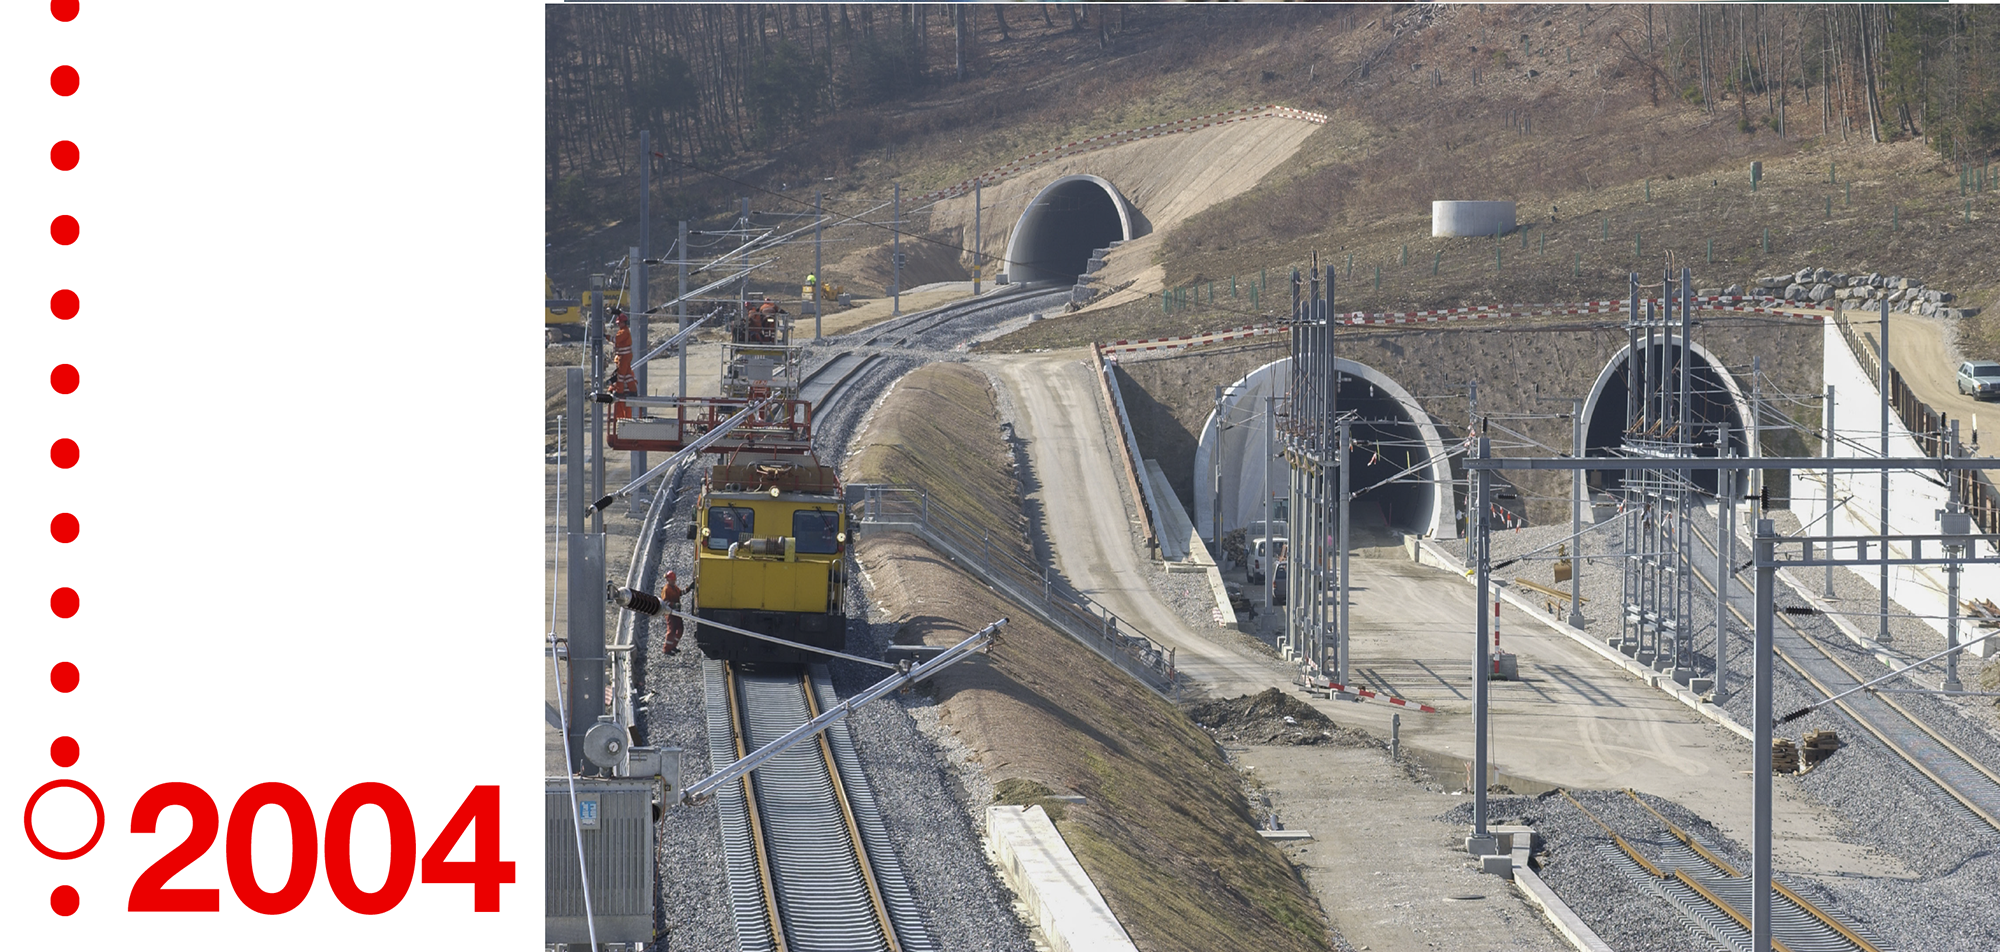 Trois voies qui vont dans le tunnel d'Oenzberg en 2004